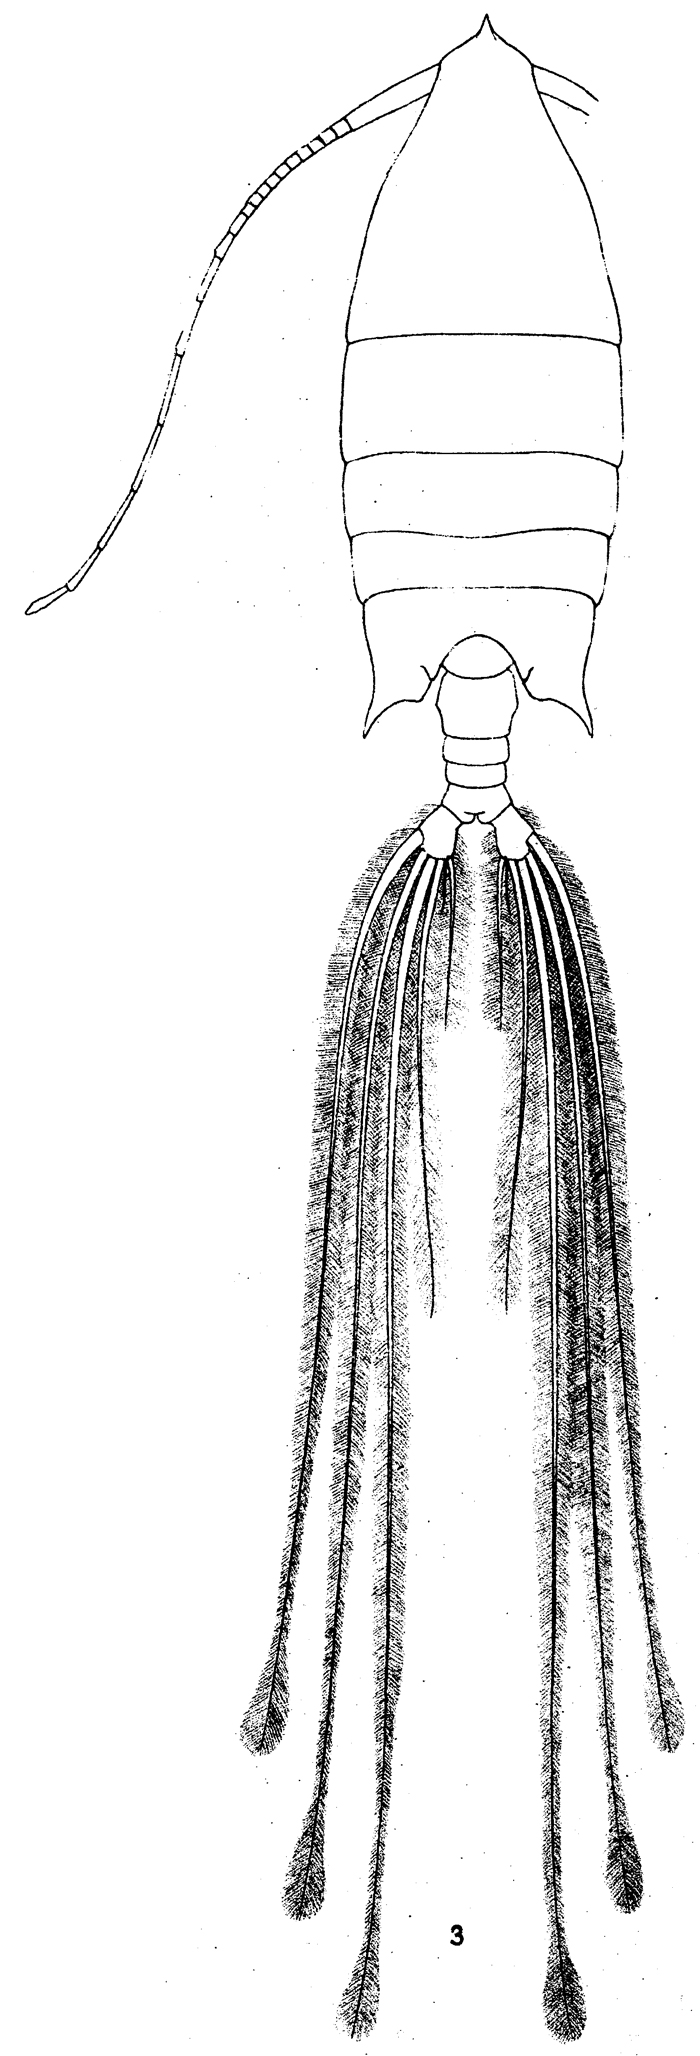 Species Arietellus setosus - Plate 6 of morphological figures